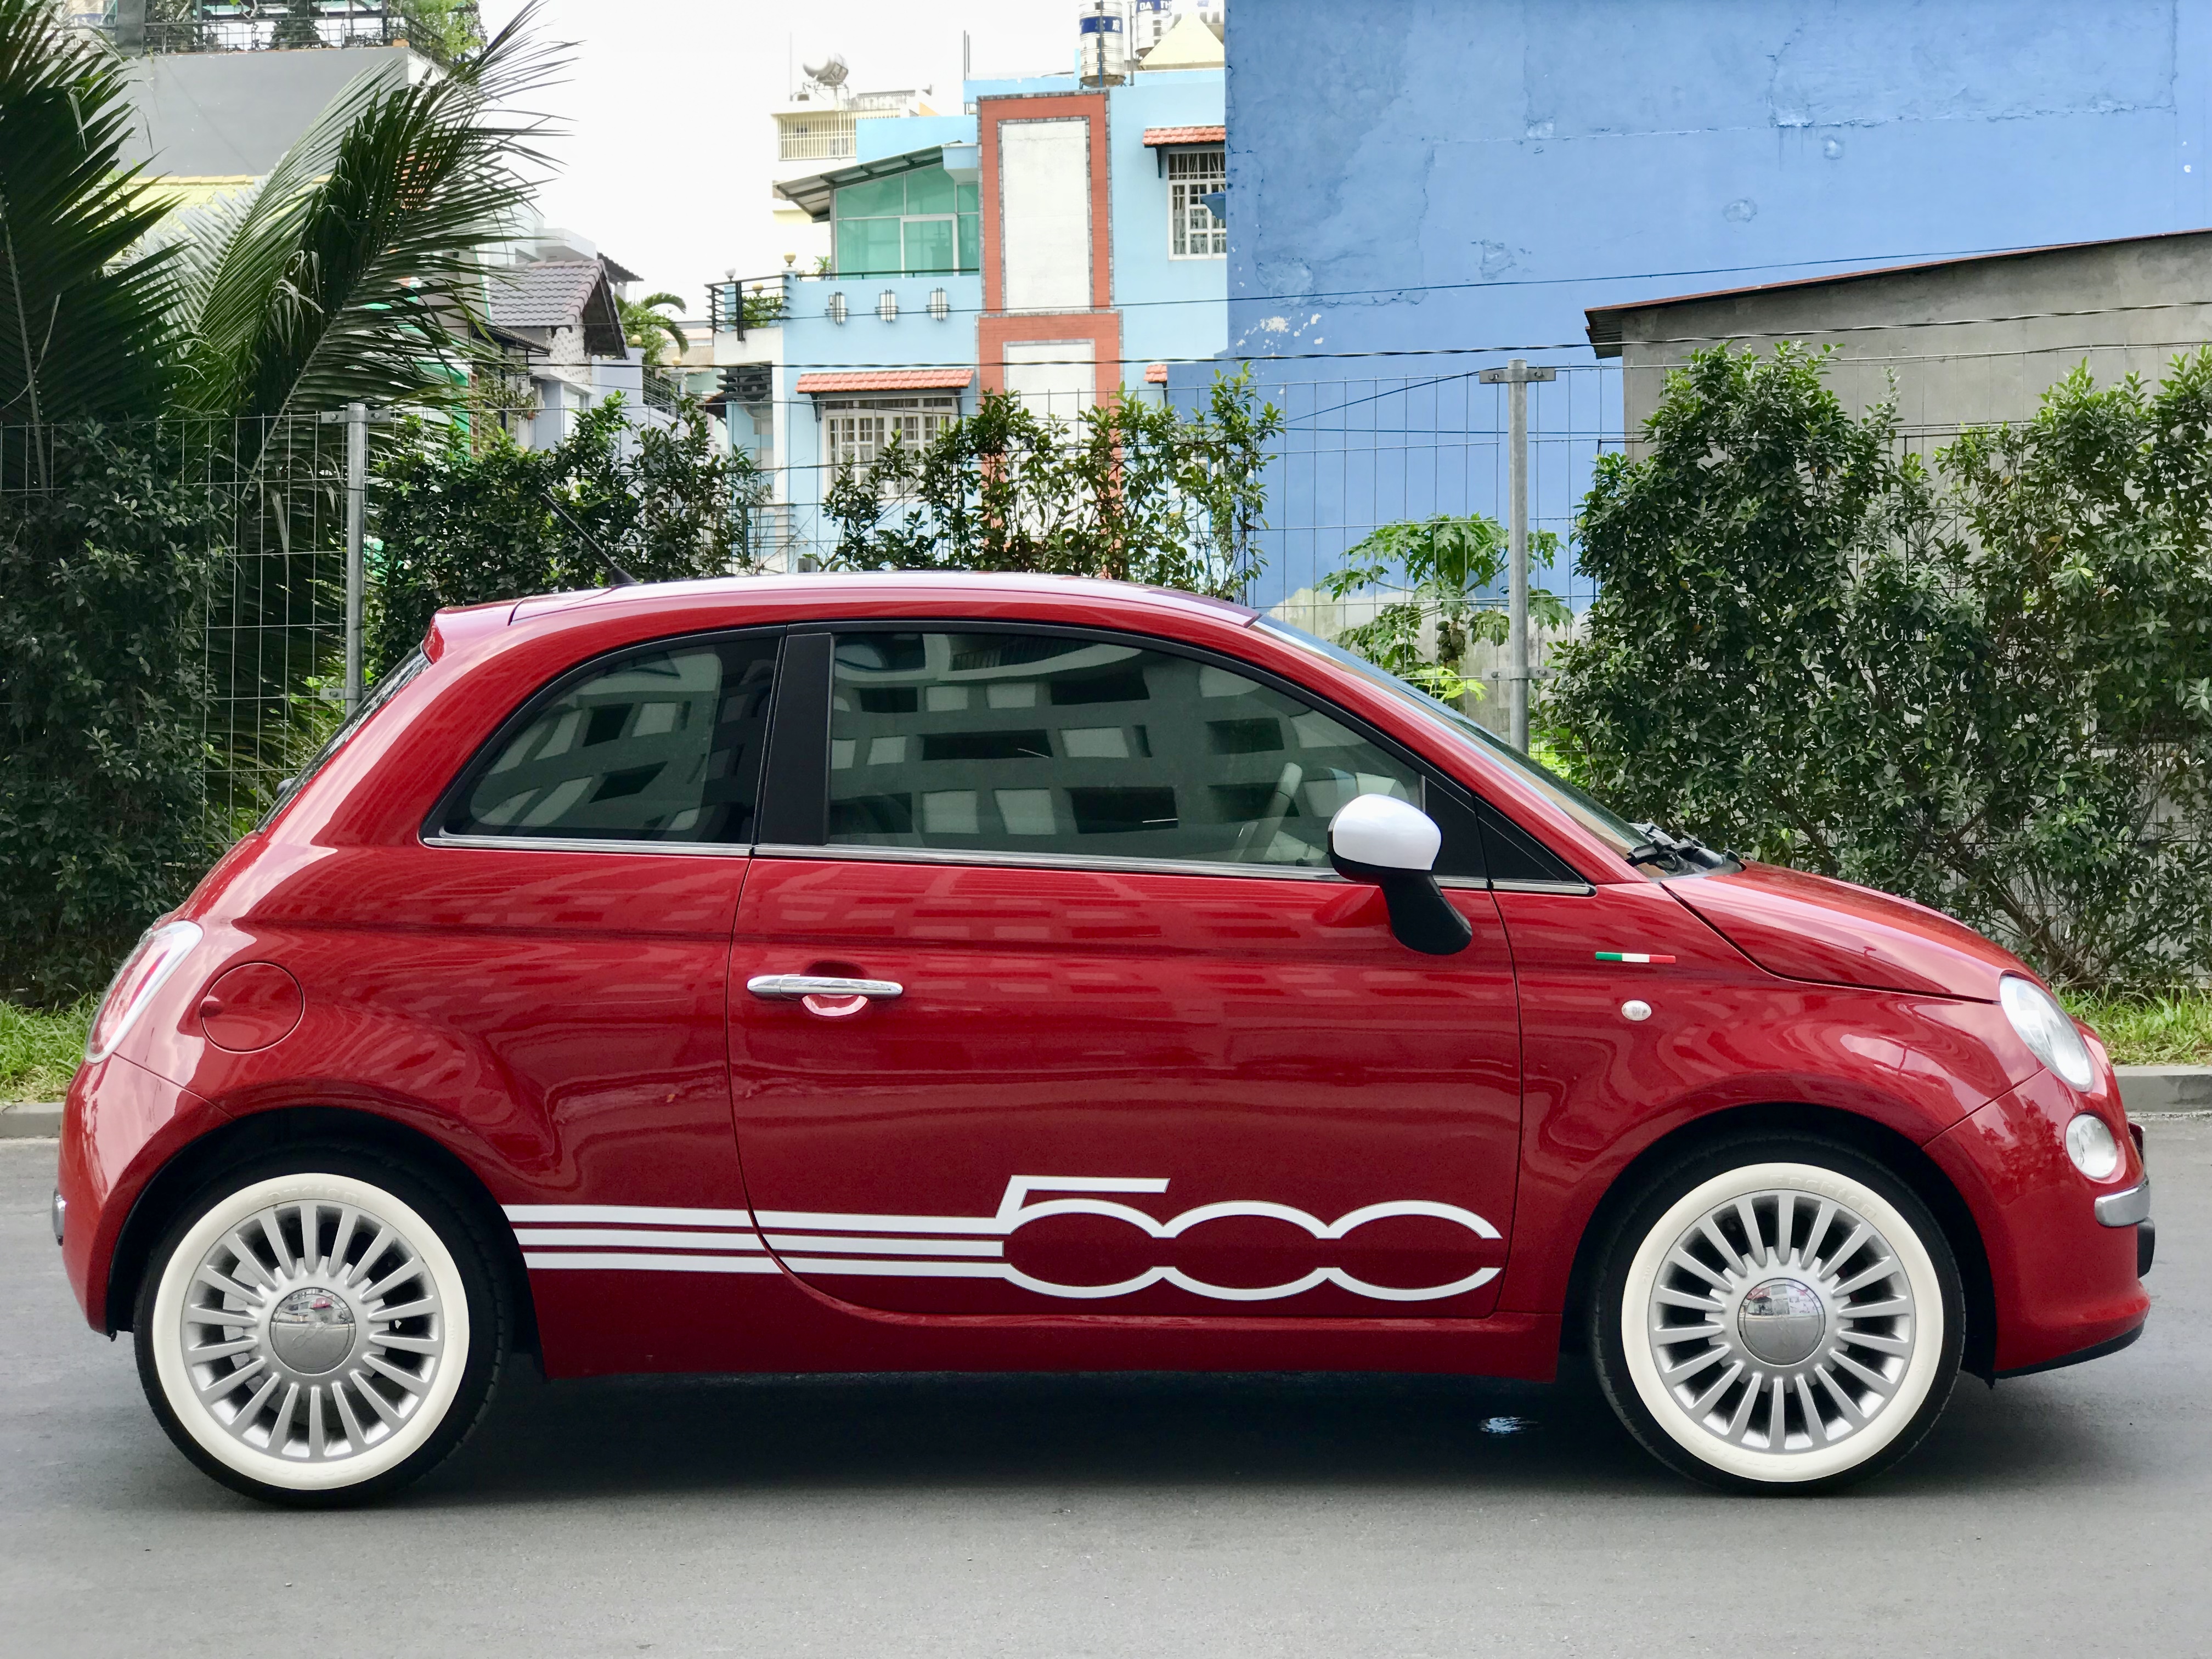 Hãng xe Fiat hướng đến thành lập liên minh với Renault